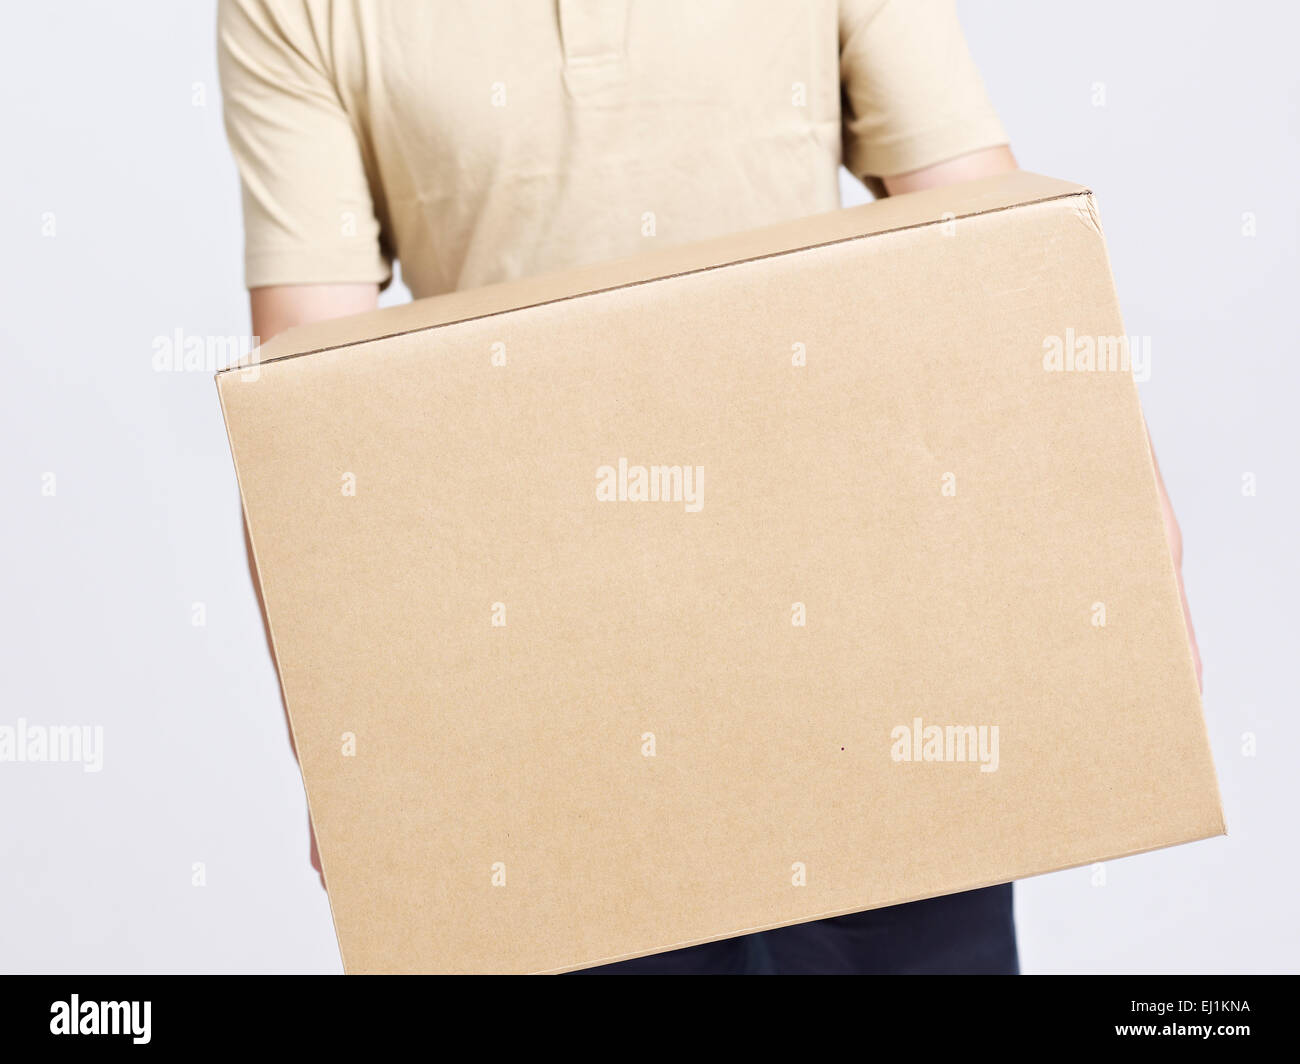 Empresa de mudanzas entrega hombre trabajador llevar grandes cajas de cartón. Foto de stock